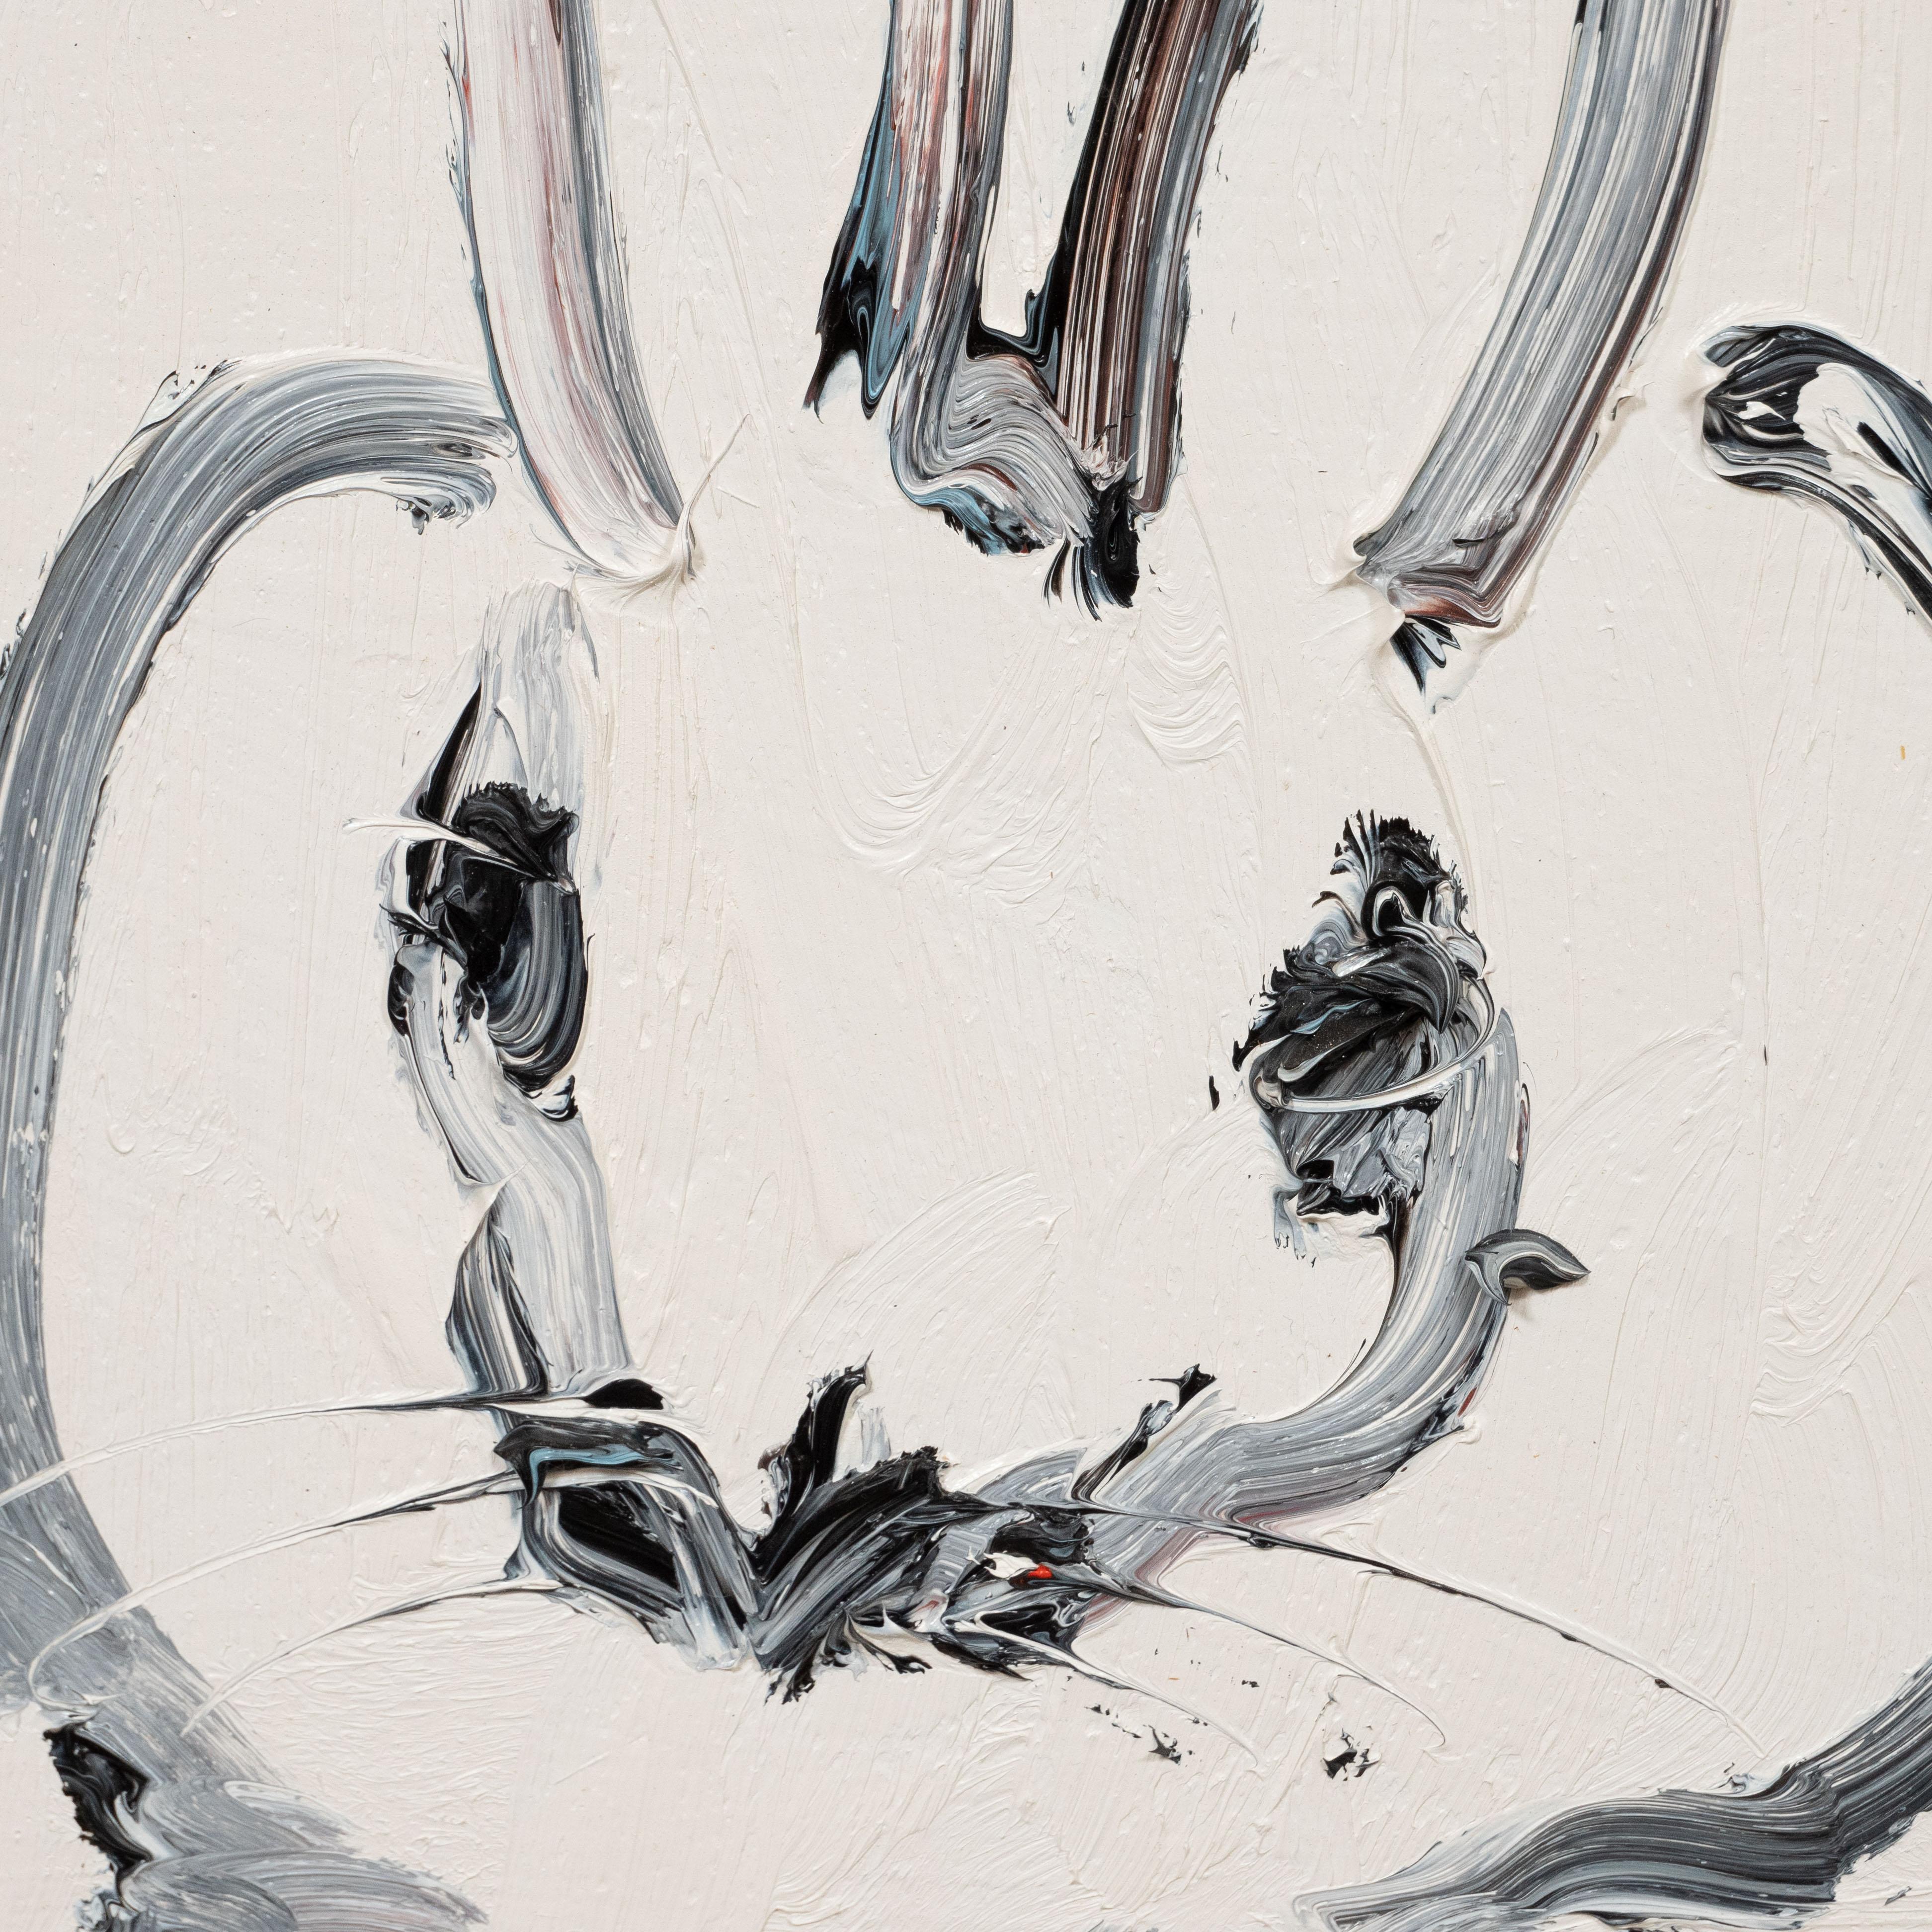 Dieses skurrile und raffinierte Gemälde wurde 2016 von dem geschätzten zeitgenössischen Maler Hunt Slonem realisiert. Es zeigt ein stilisiertes Kaninchen im Profil, das mit lockeren und ausdrucksstarken Pinselstrichen in schwarzer und weißer Farbe